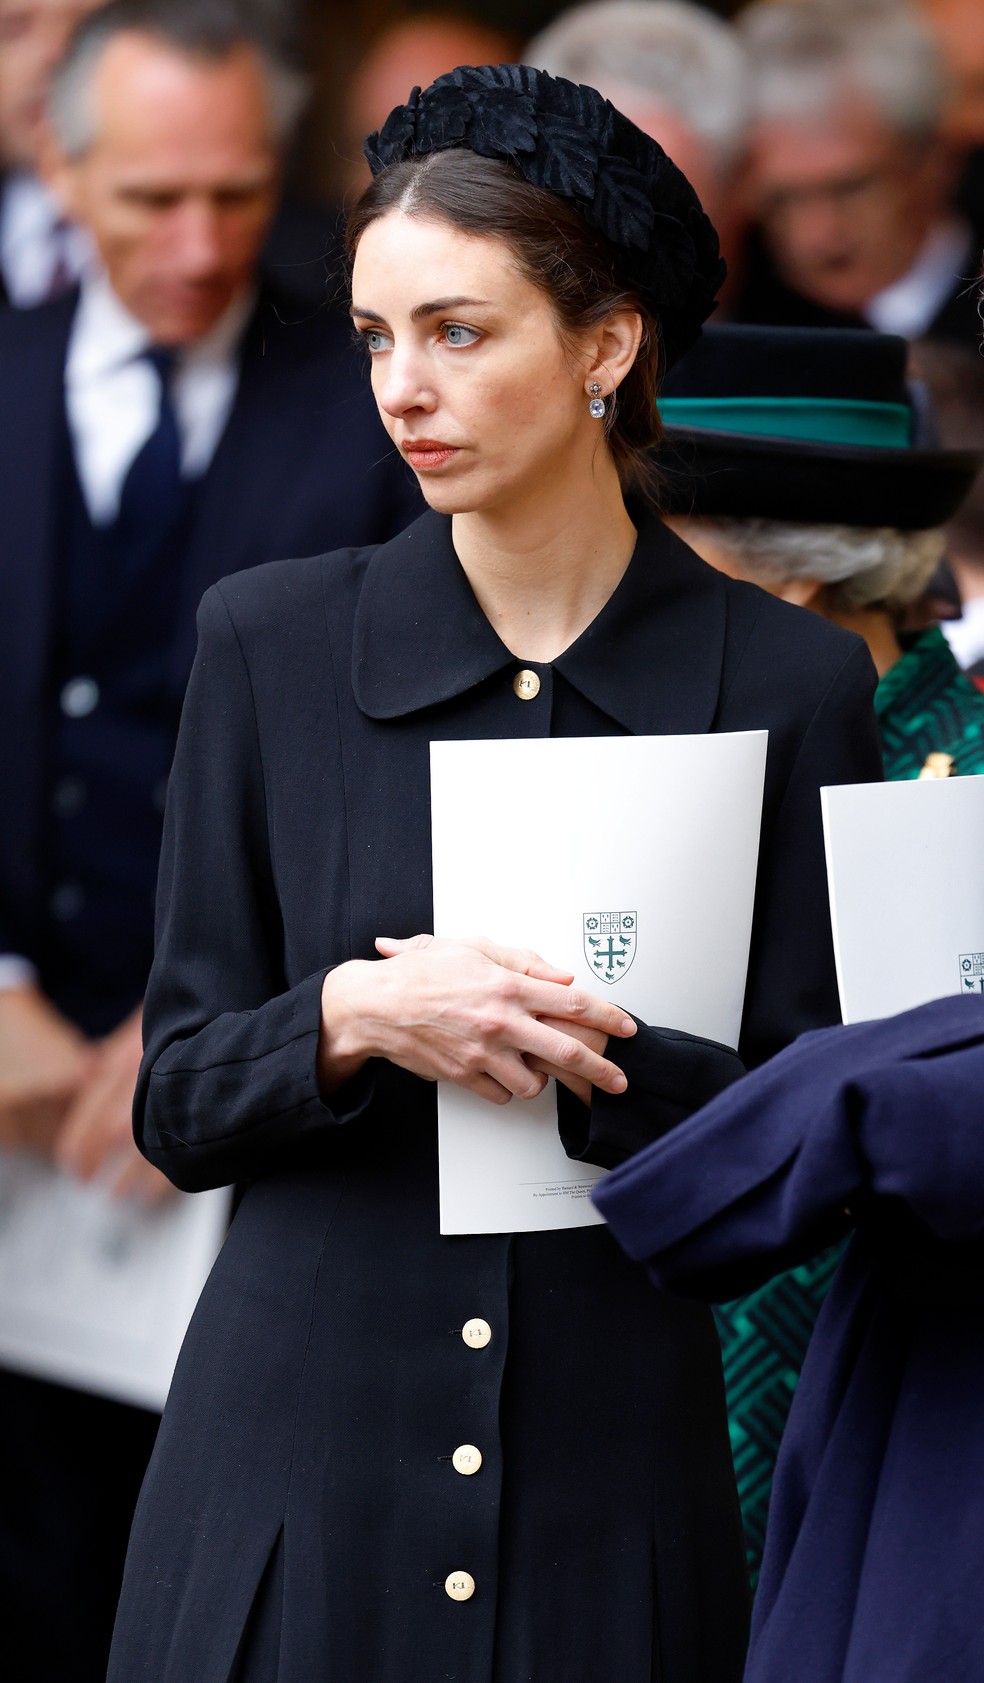 Rose Hanbury, marquesa de Cholmondeley, participa de uma missa de Ação de Graças em homenagem ao príncipe Philip na Abadia de Westminster em 29 de março de 2022 em Londres, Inglaterra — Foto: Getty Images